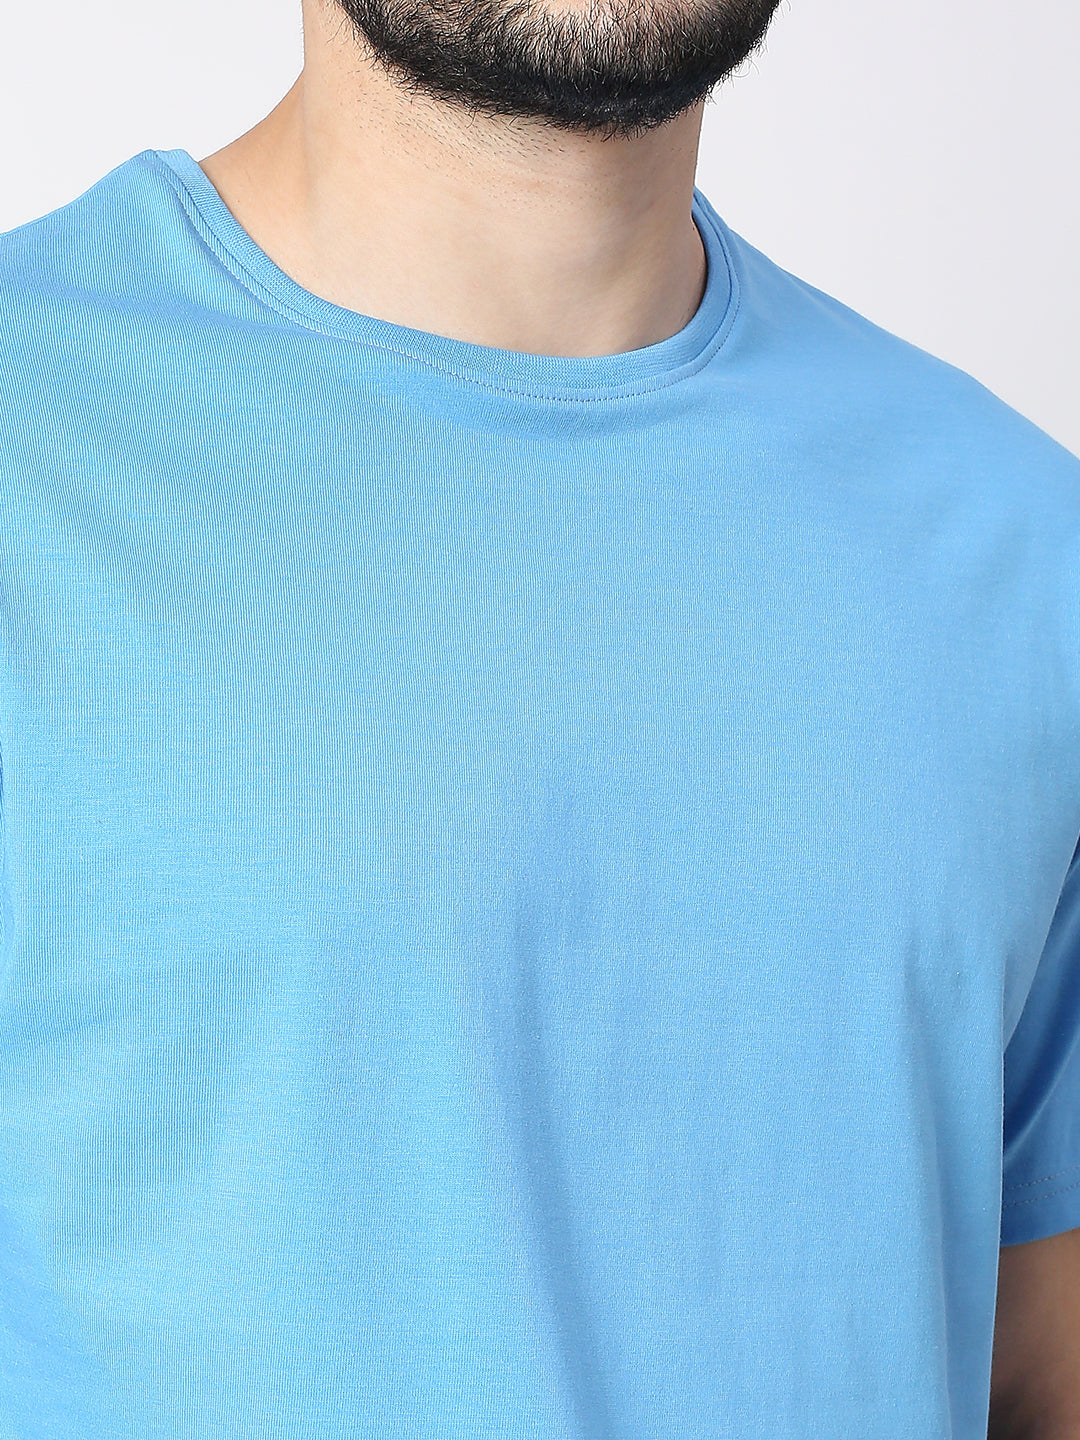 Buy Blamblack Solid Light Blue Half Sleeved T-shirt